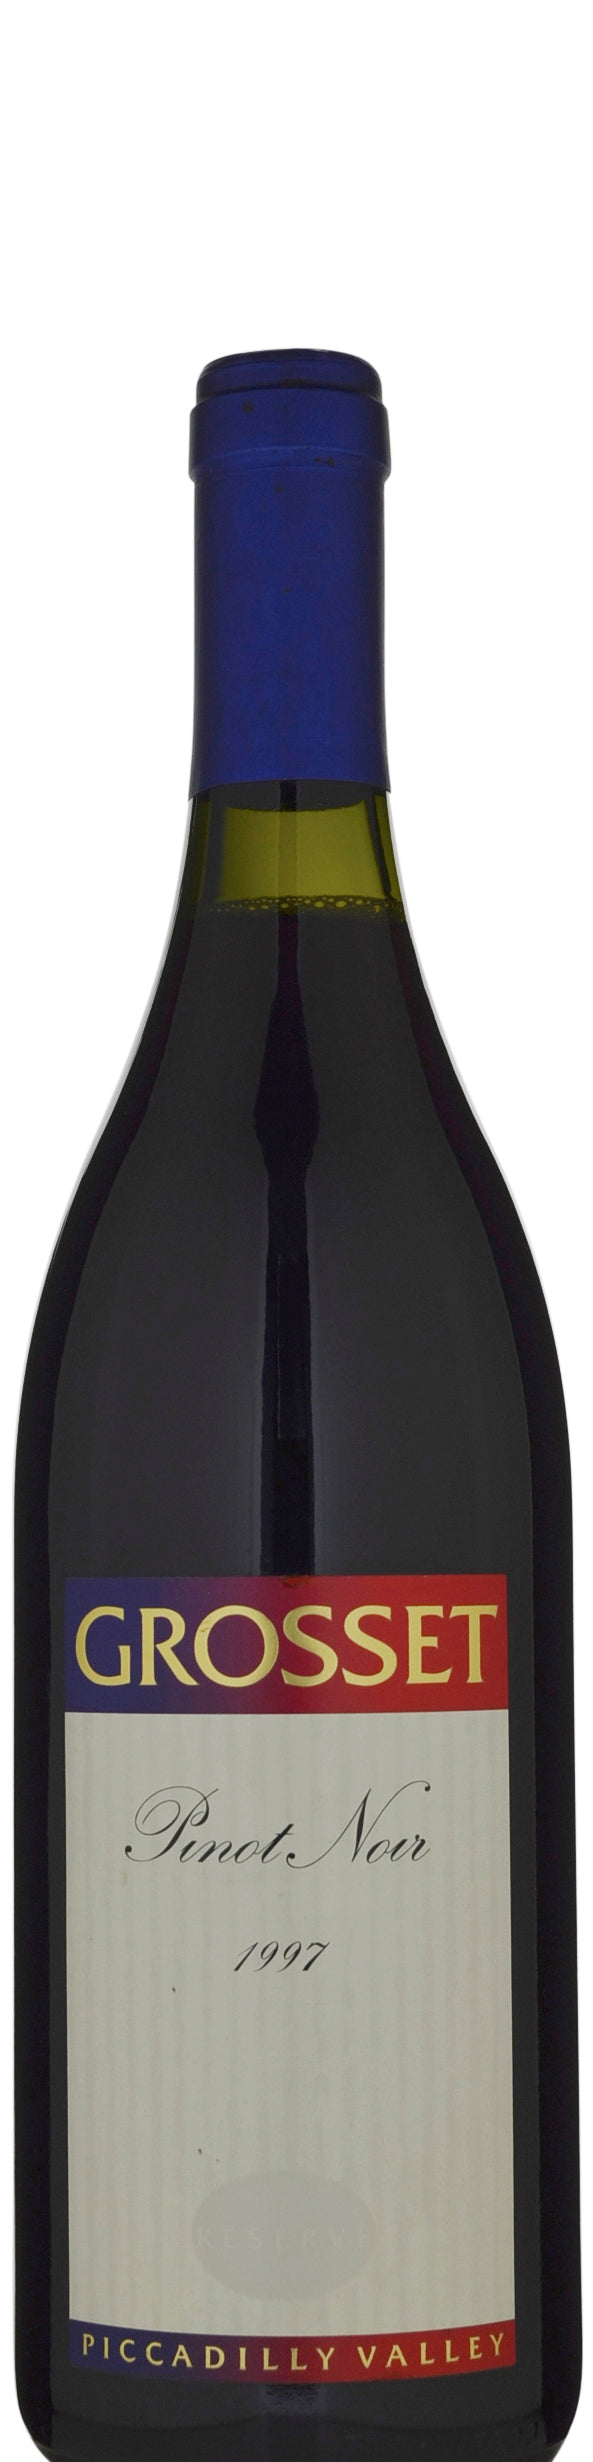 Grosset Reserve Pinot Noir 1997